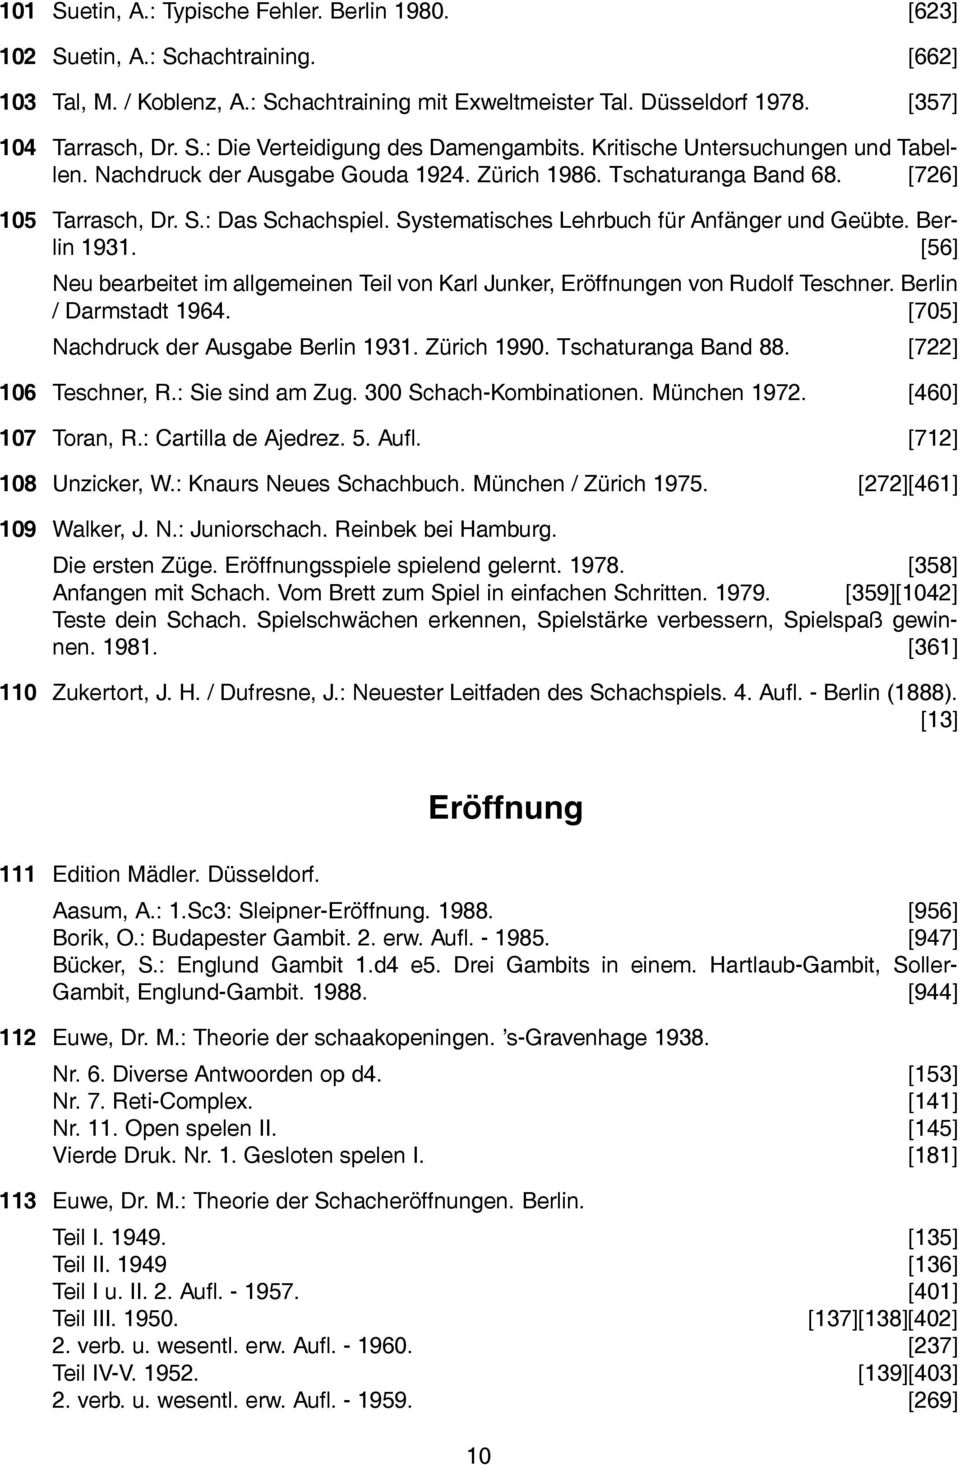 Systematisches Lehrbuch für Anfänger und Geübte. Berlin 1931. [56] Neu bearbeitet im allgemeinen Teil von Karl Junker, Eröffnungen von Rudolf Teschner. Berlin / Darmstadt 1964.